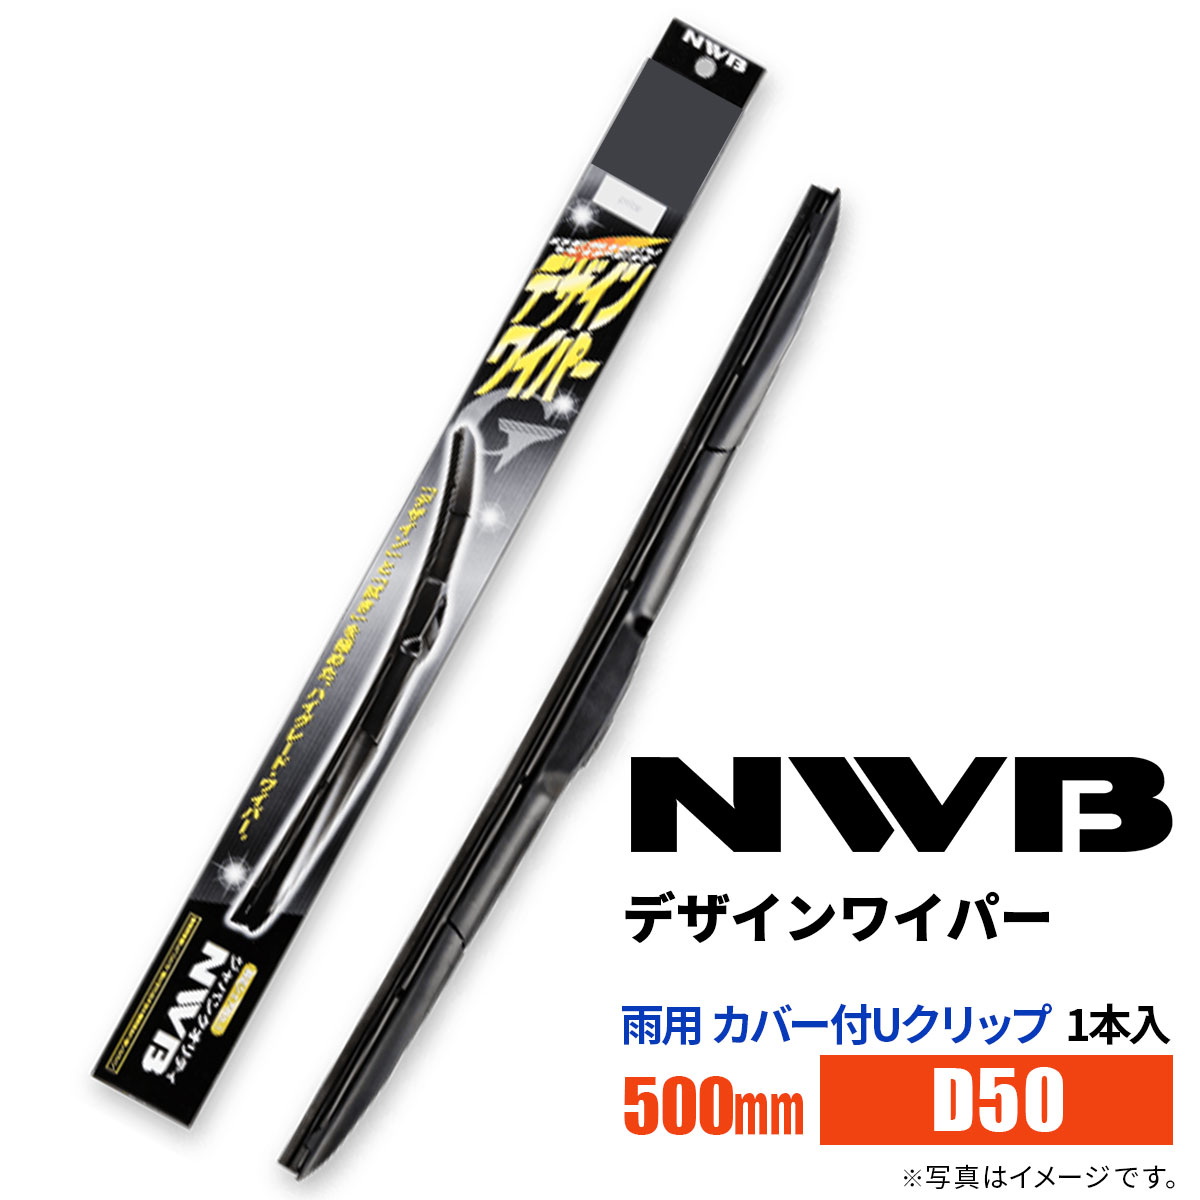 NWB デザインワイパー D50 500mm 1本入 雨用ワイパー カバー付Uクリップ